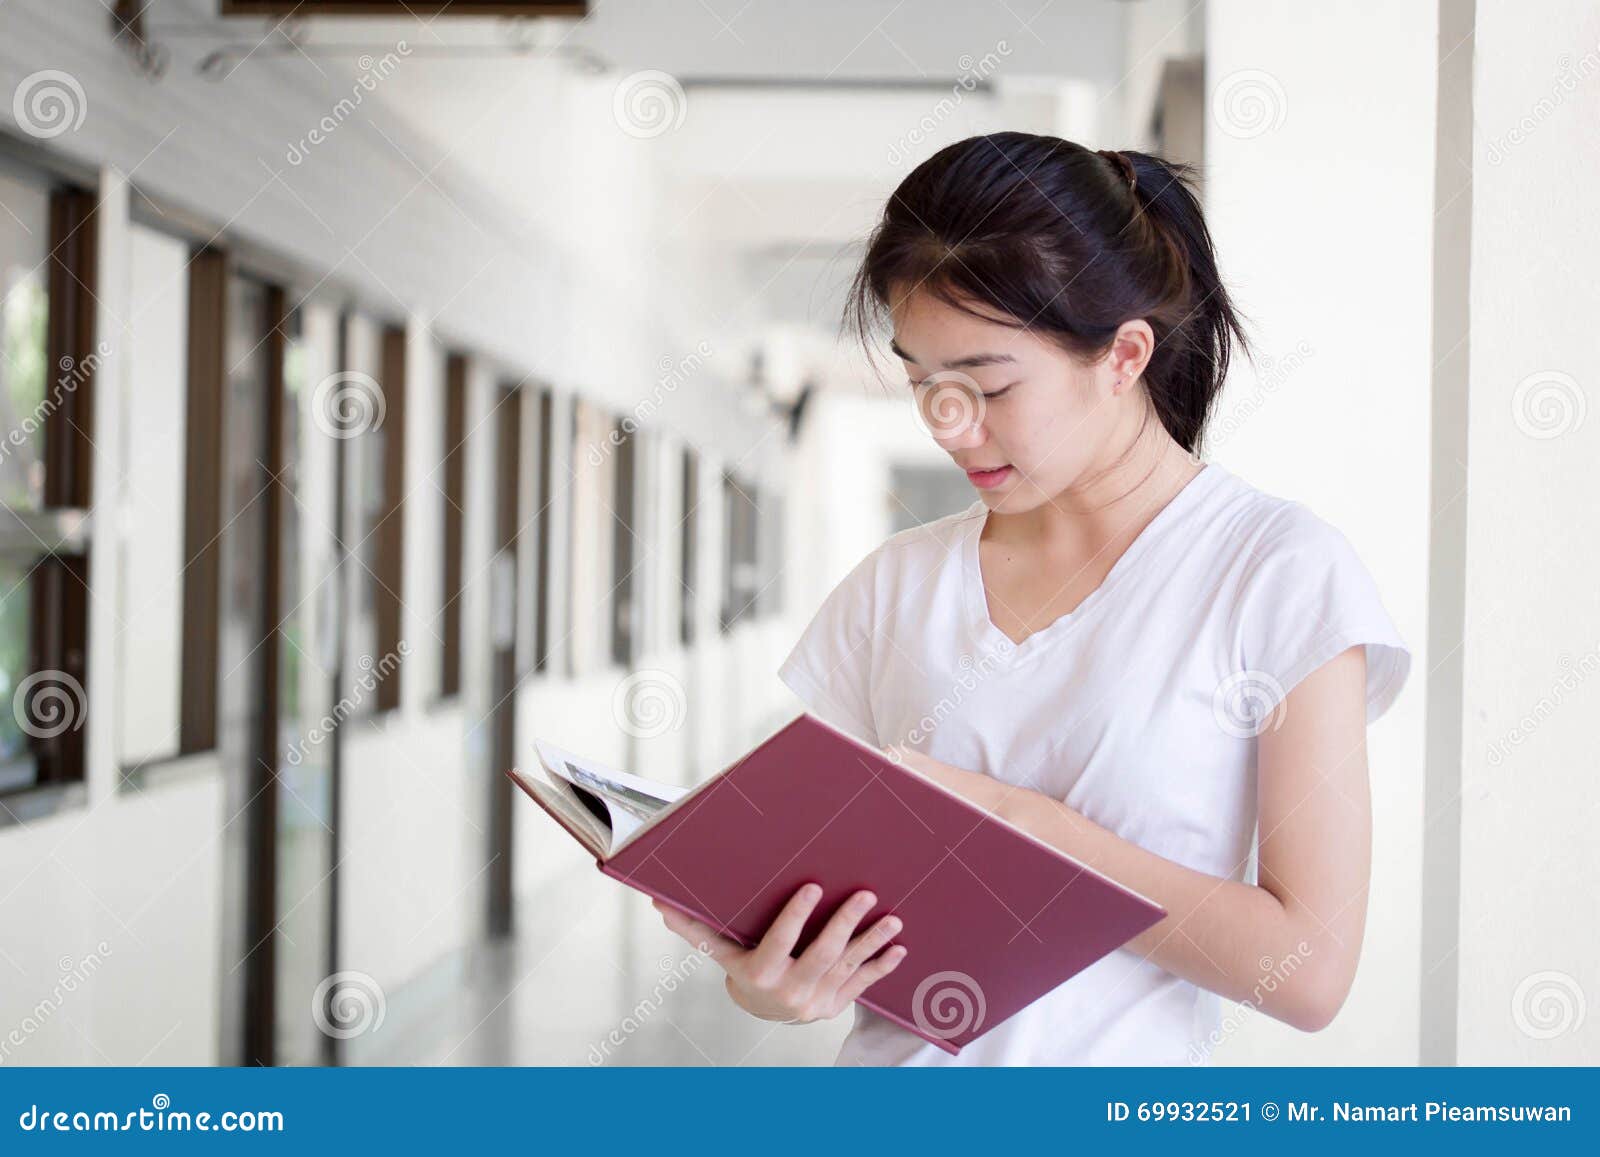 Da universidade tailandesa do estudante da porcelana de Ásia a menina bonita leu um livro Tailândia